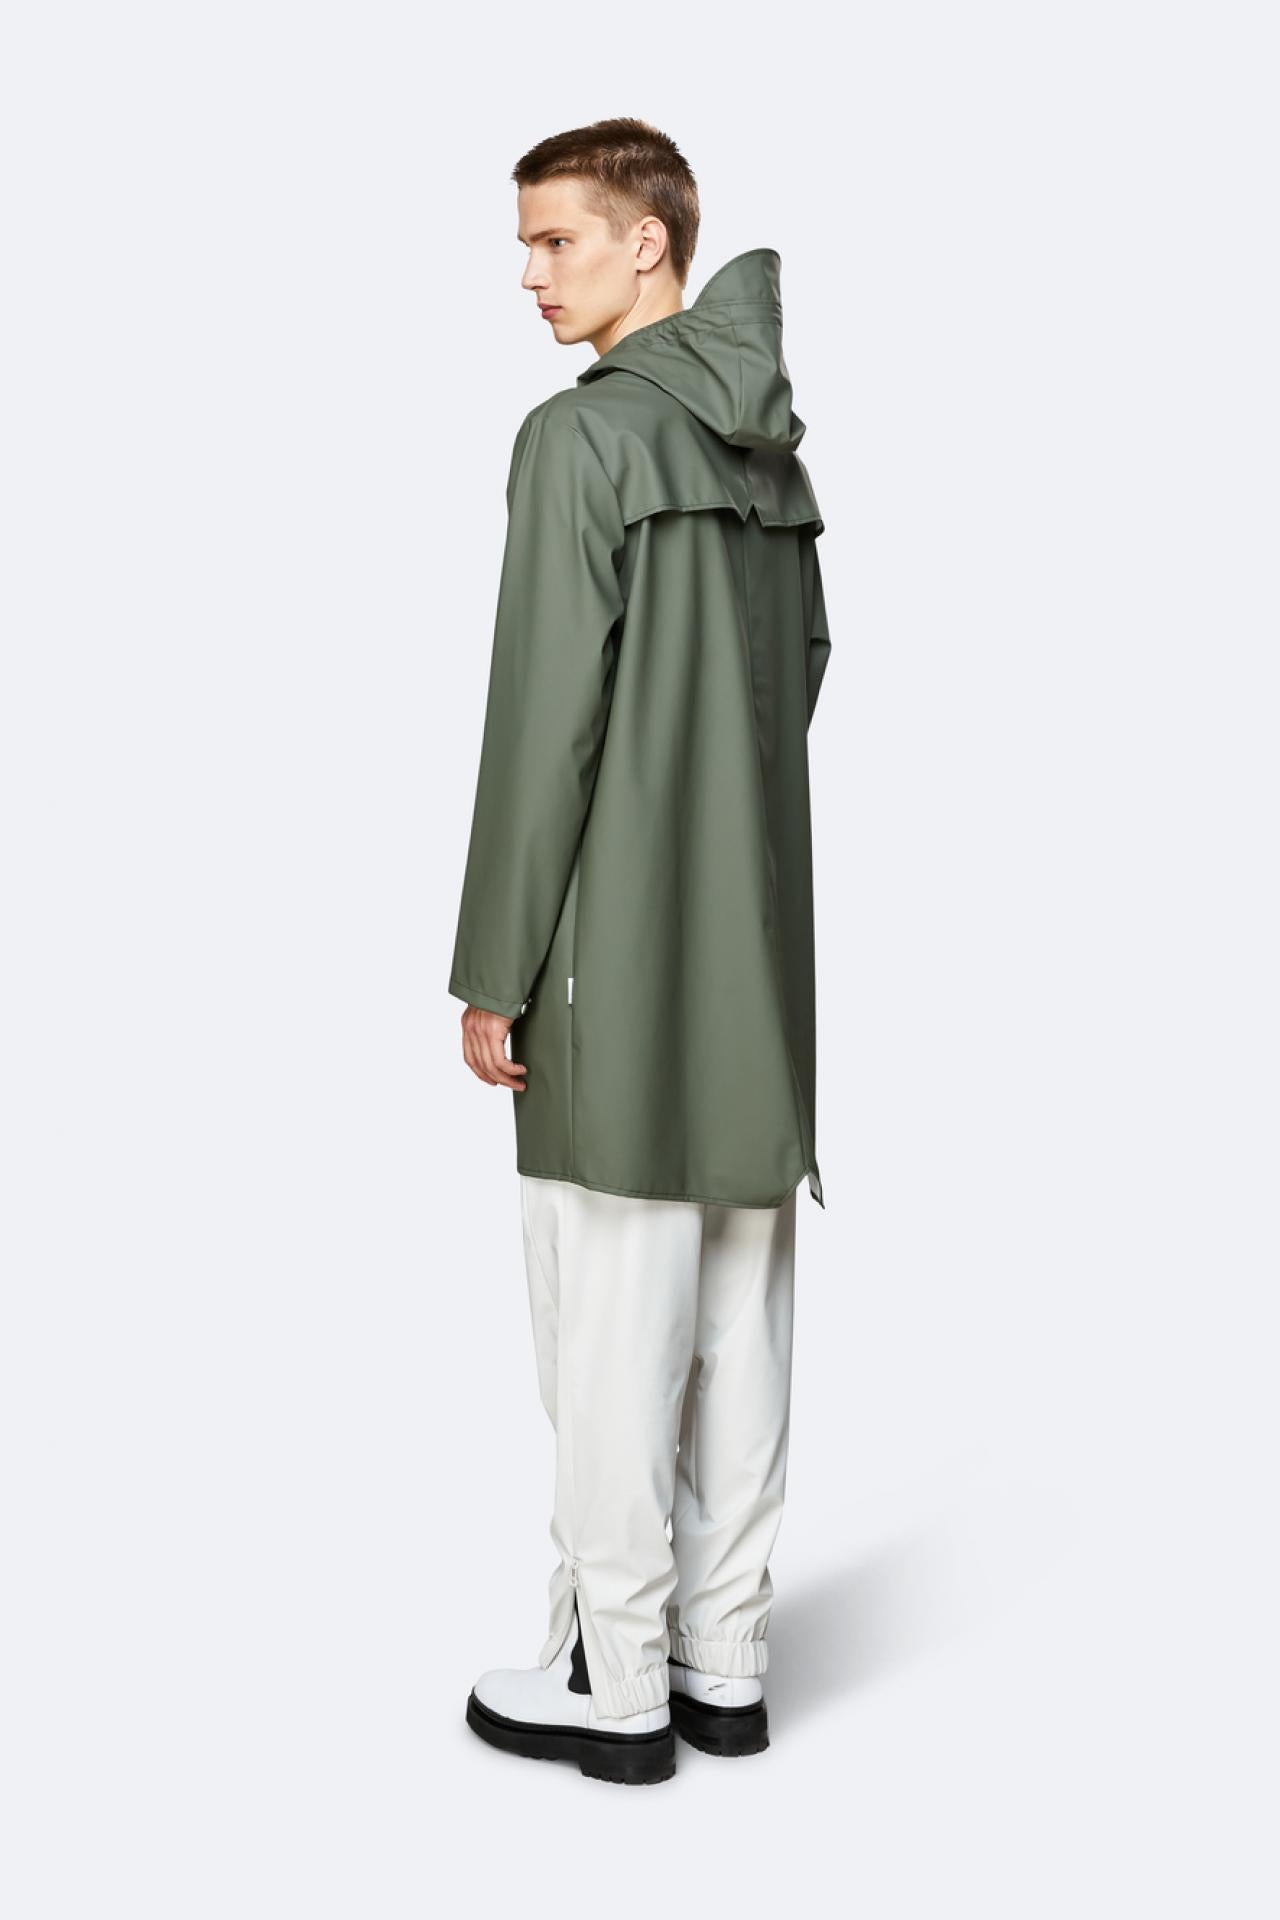 Rains Regenjacke Long Jacket 1202 Olive - Größe: XXS/XS